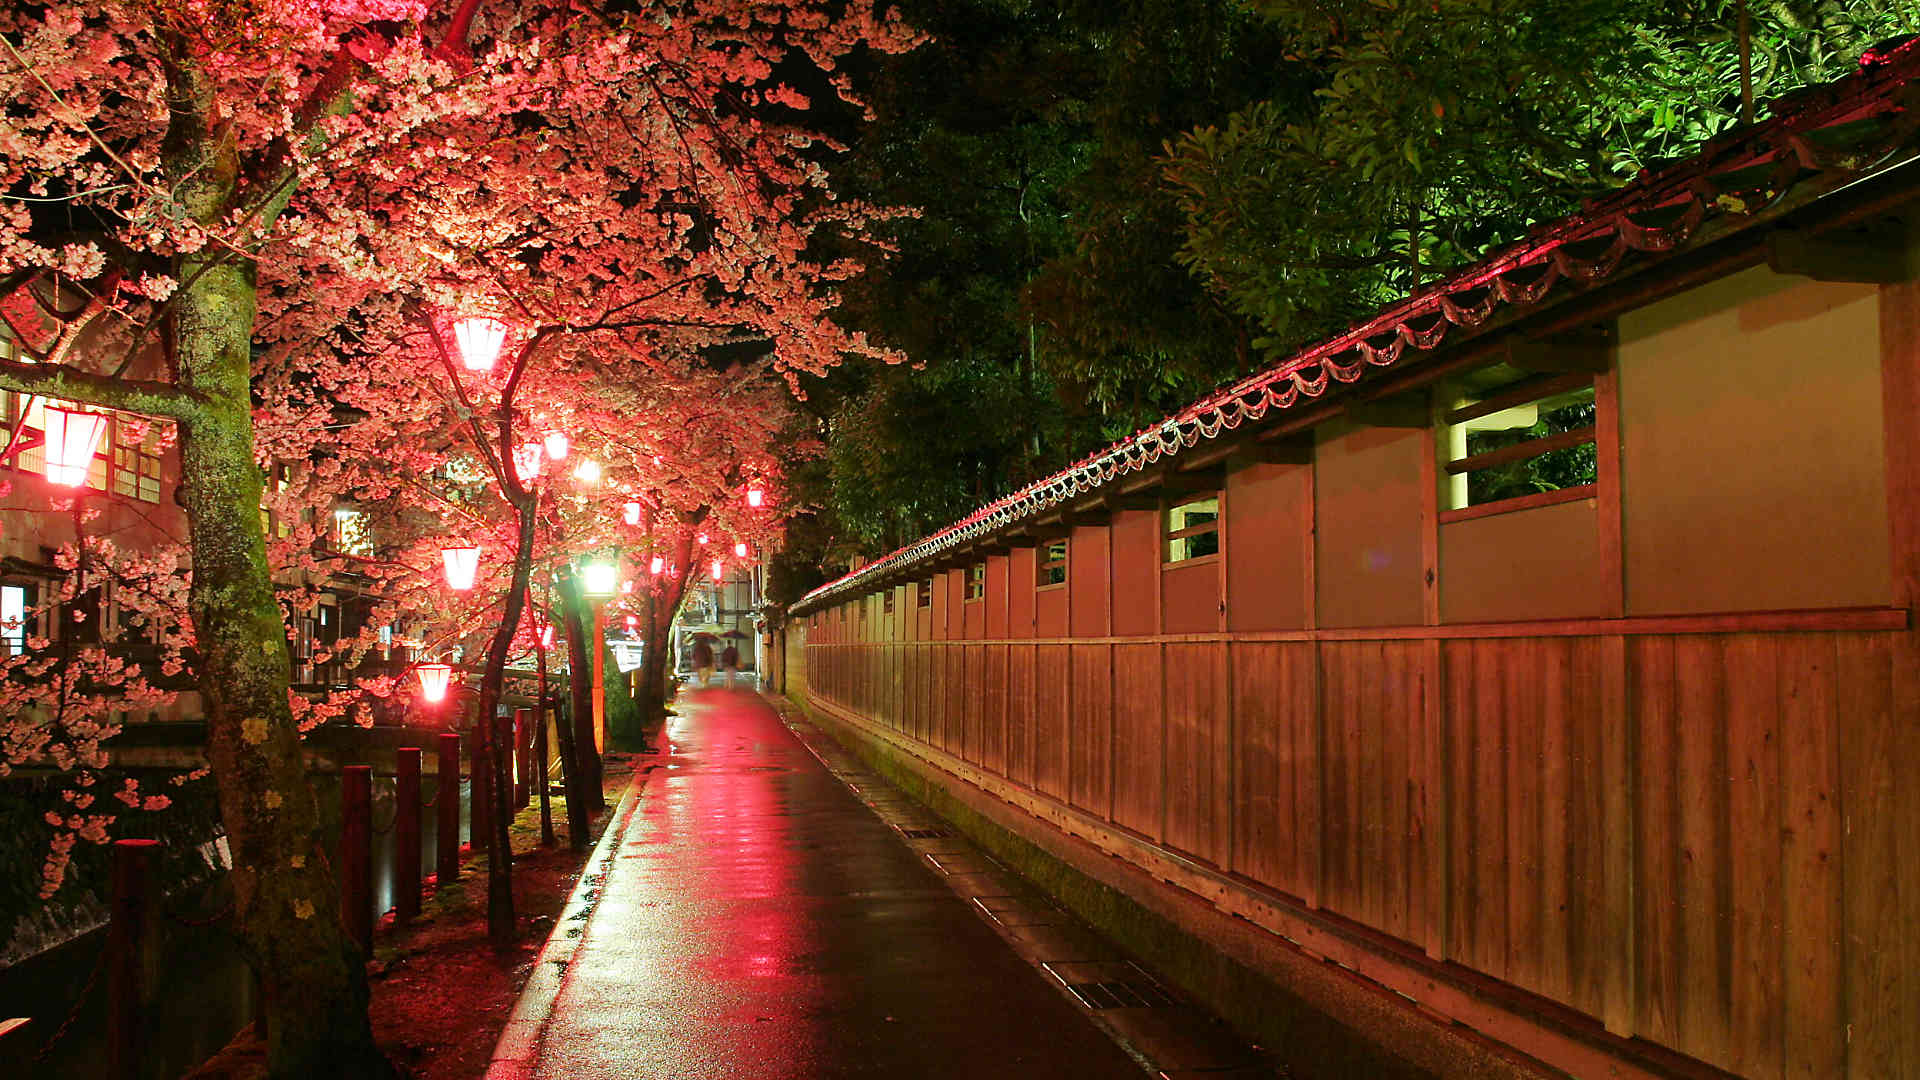 城崎温泉夜桜月間18 城崎温泉桜のライトアップ